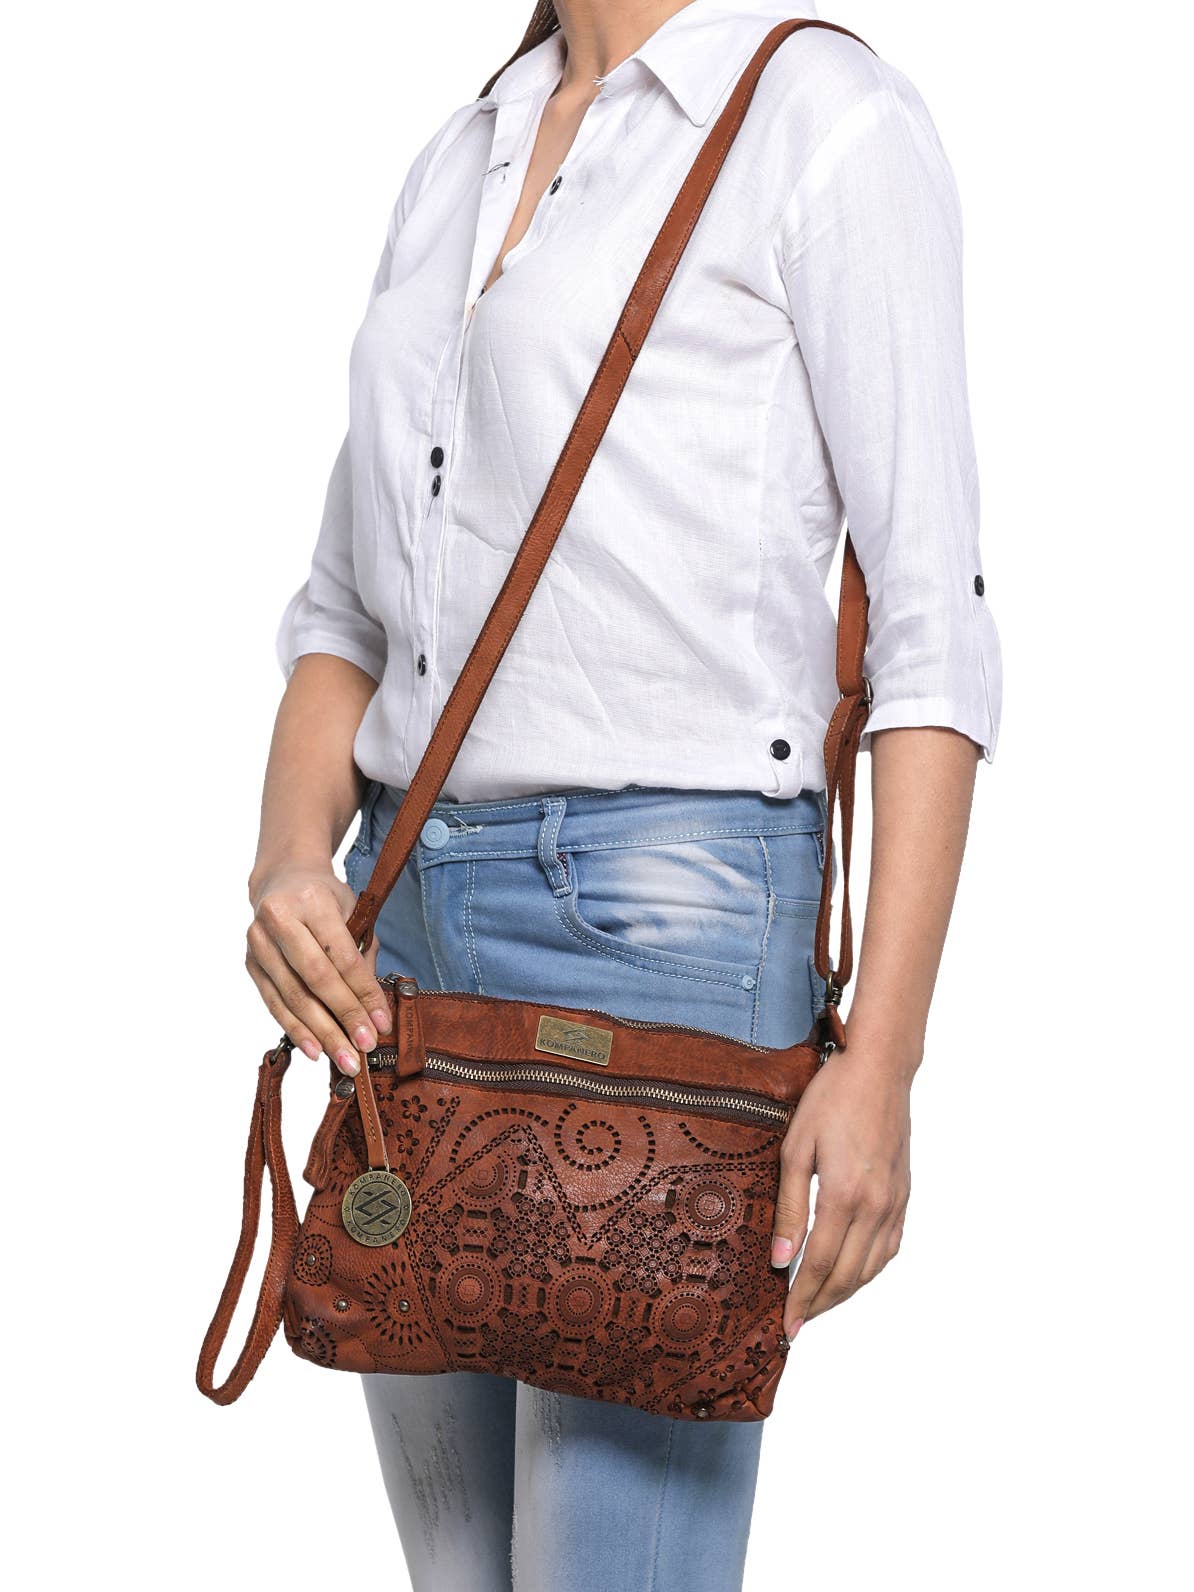 Genuine Leather Floral Design Handbag w/Sling - Kim - Cognac Model